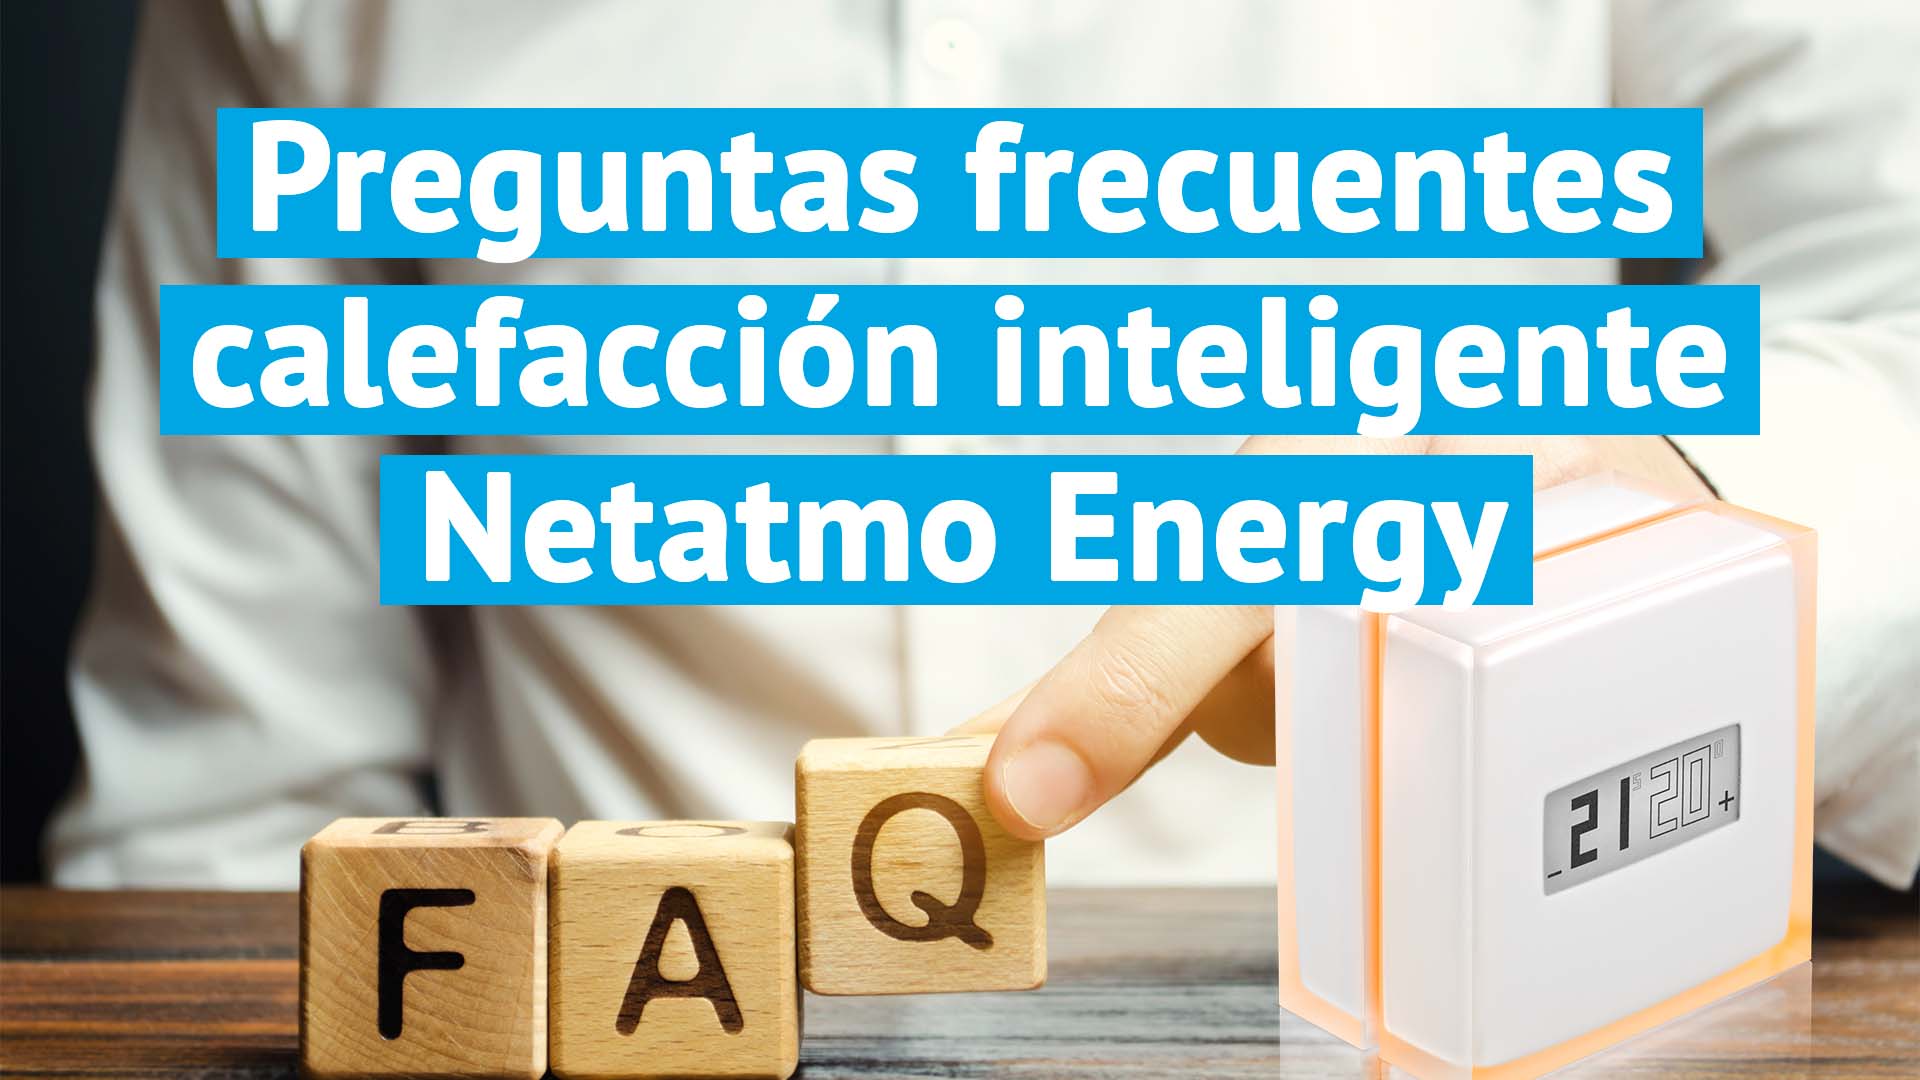 Preguntas a Netatmo Energy habituales sobre su calefacción inteligente